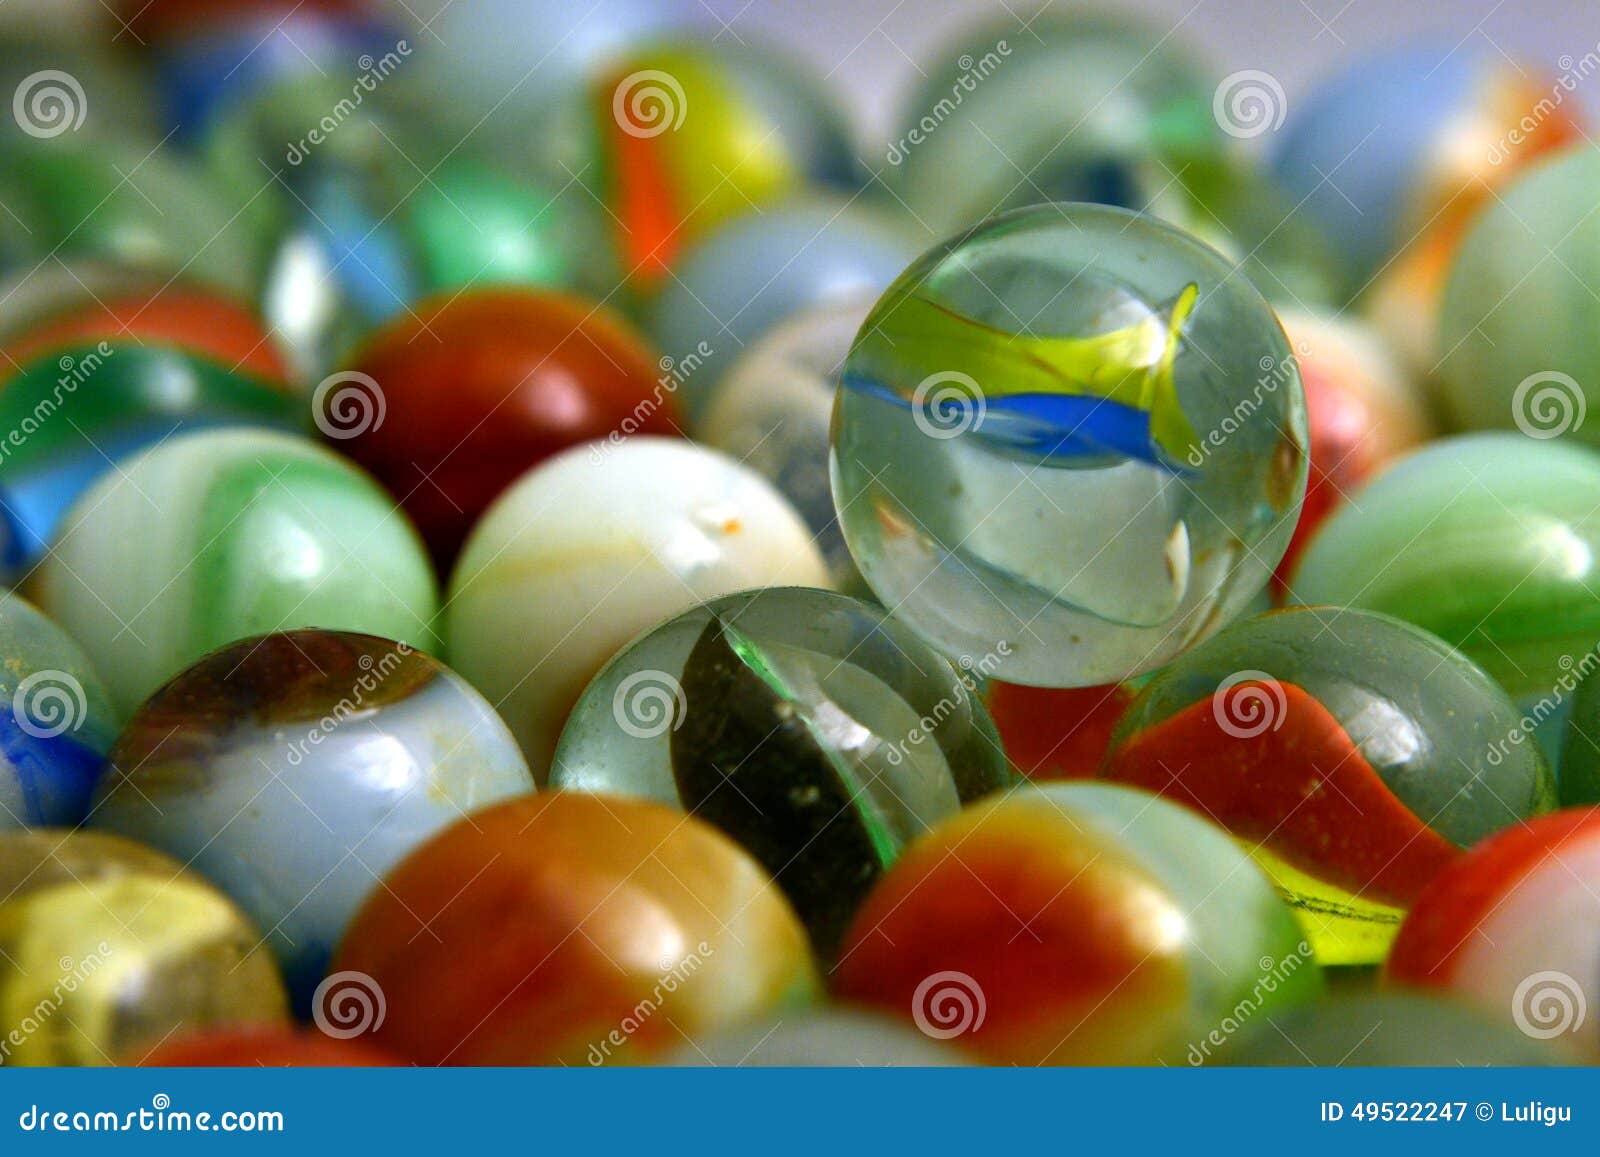 glass colored balls.